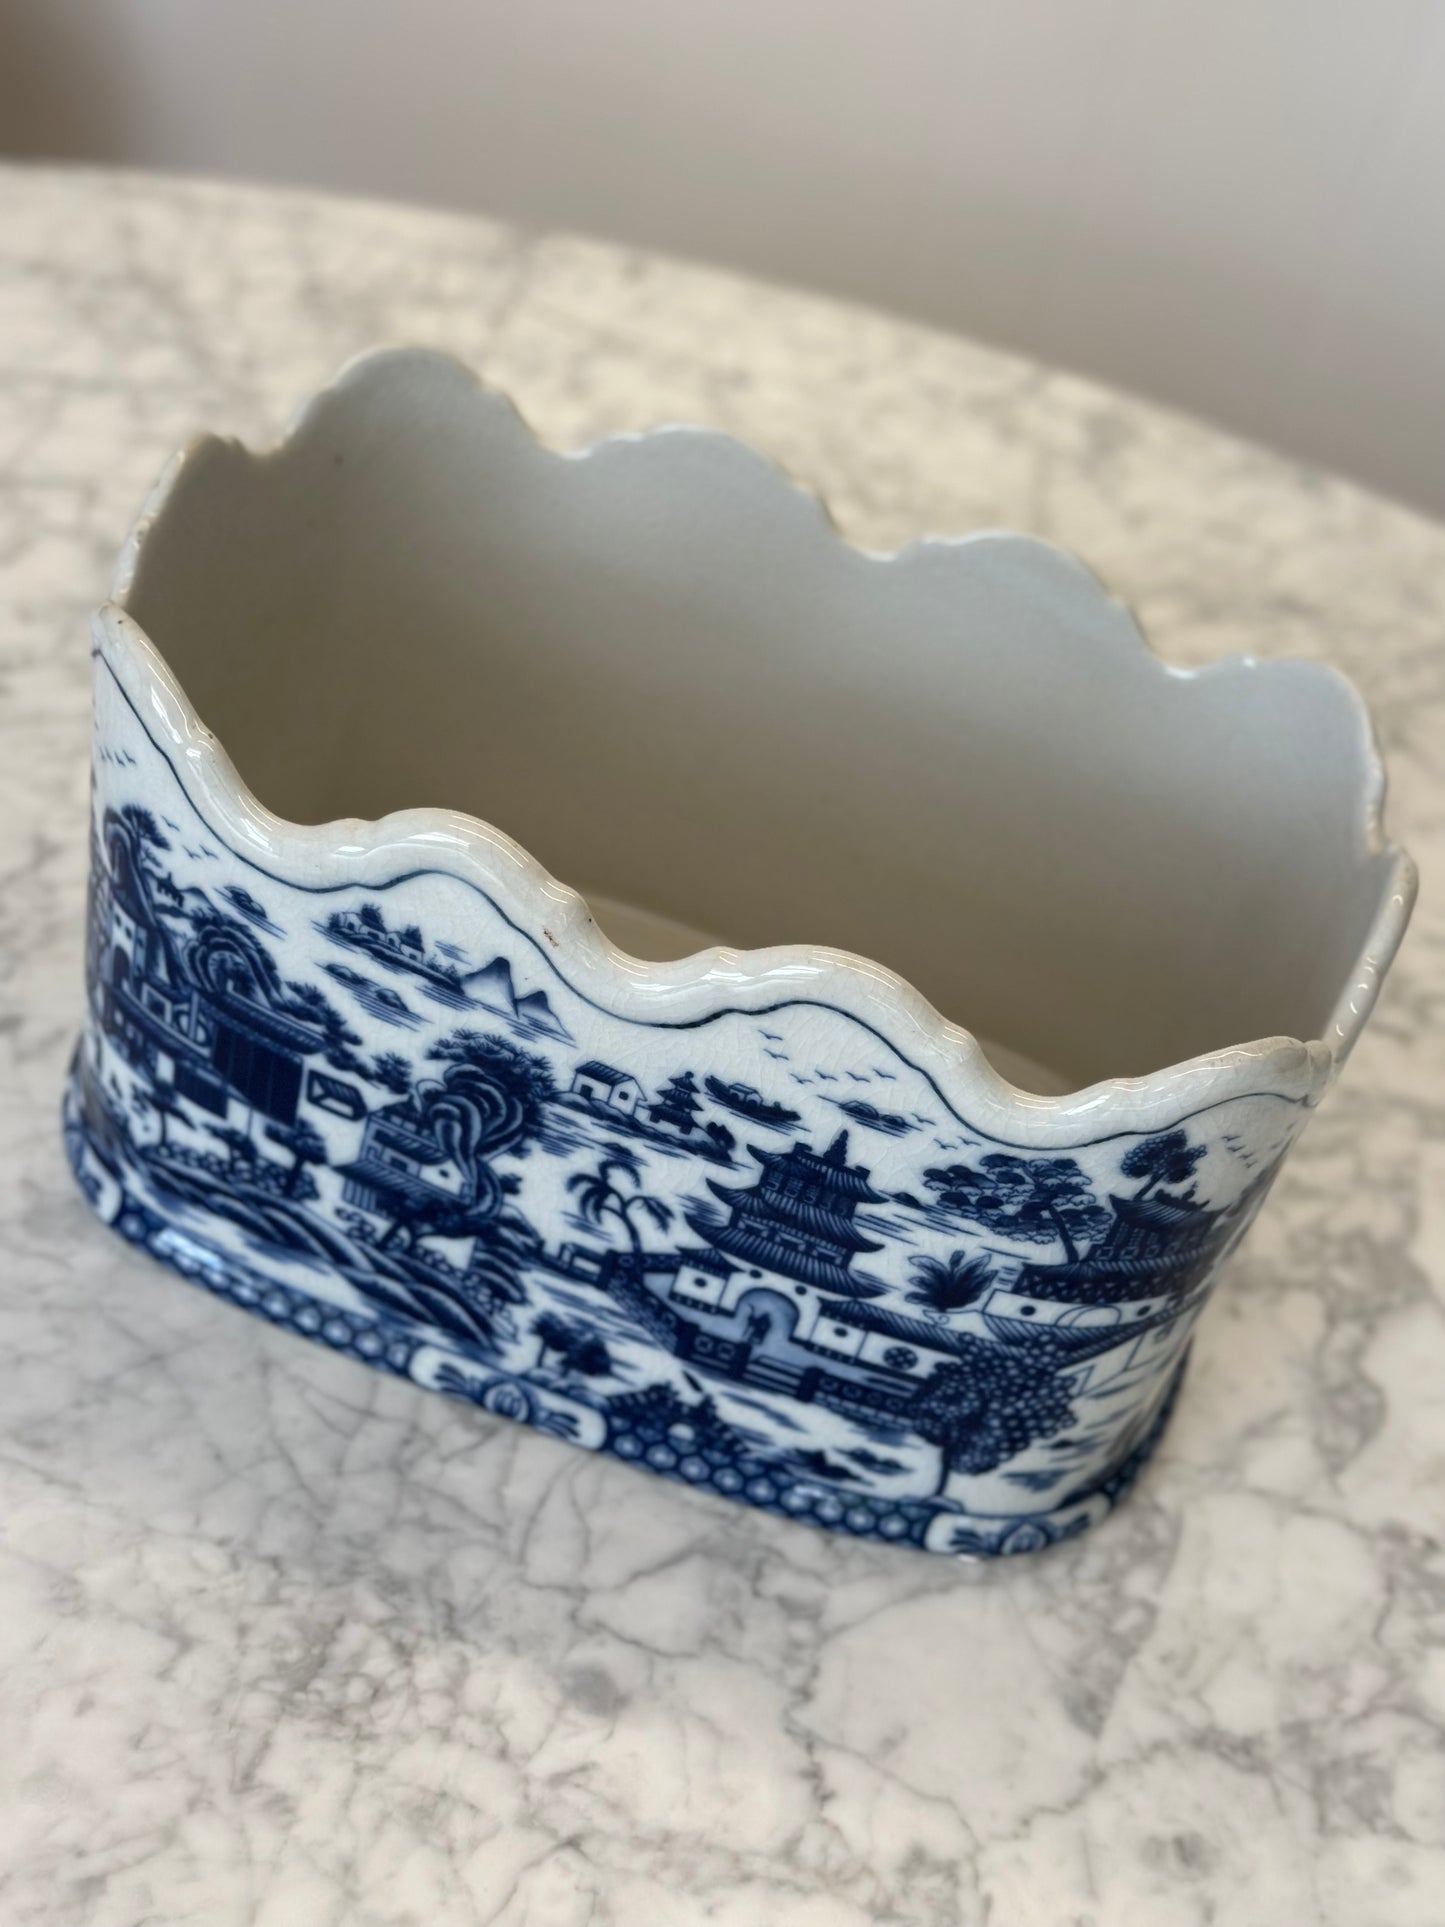 Porcelain - Cobalt Scalloped Oval Planter Blue & White